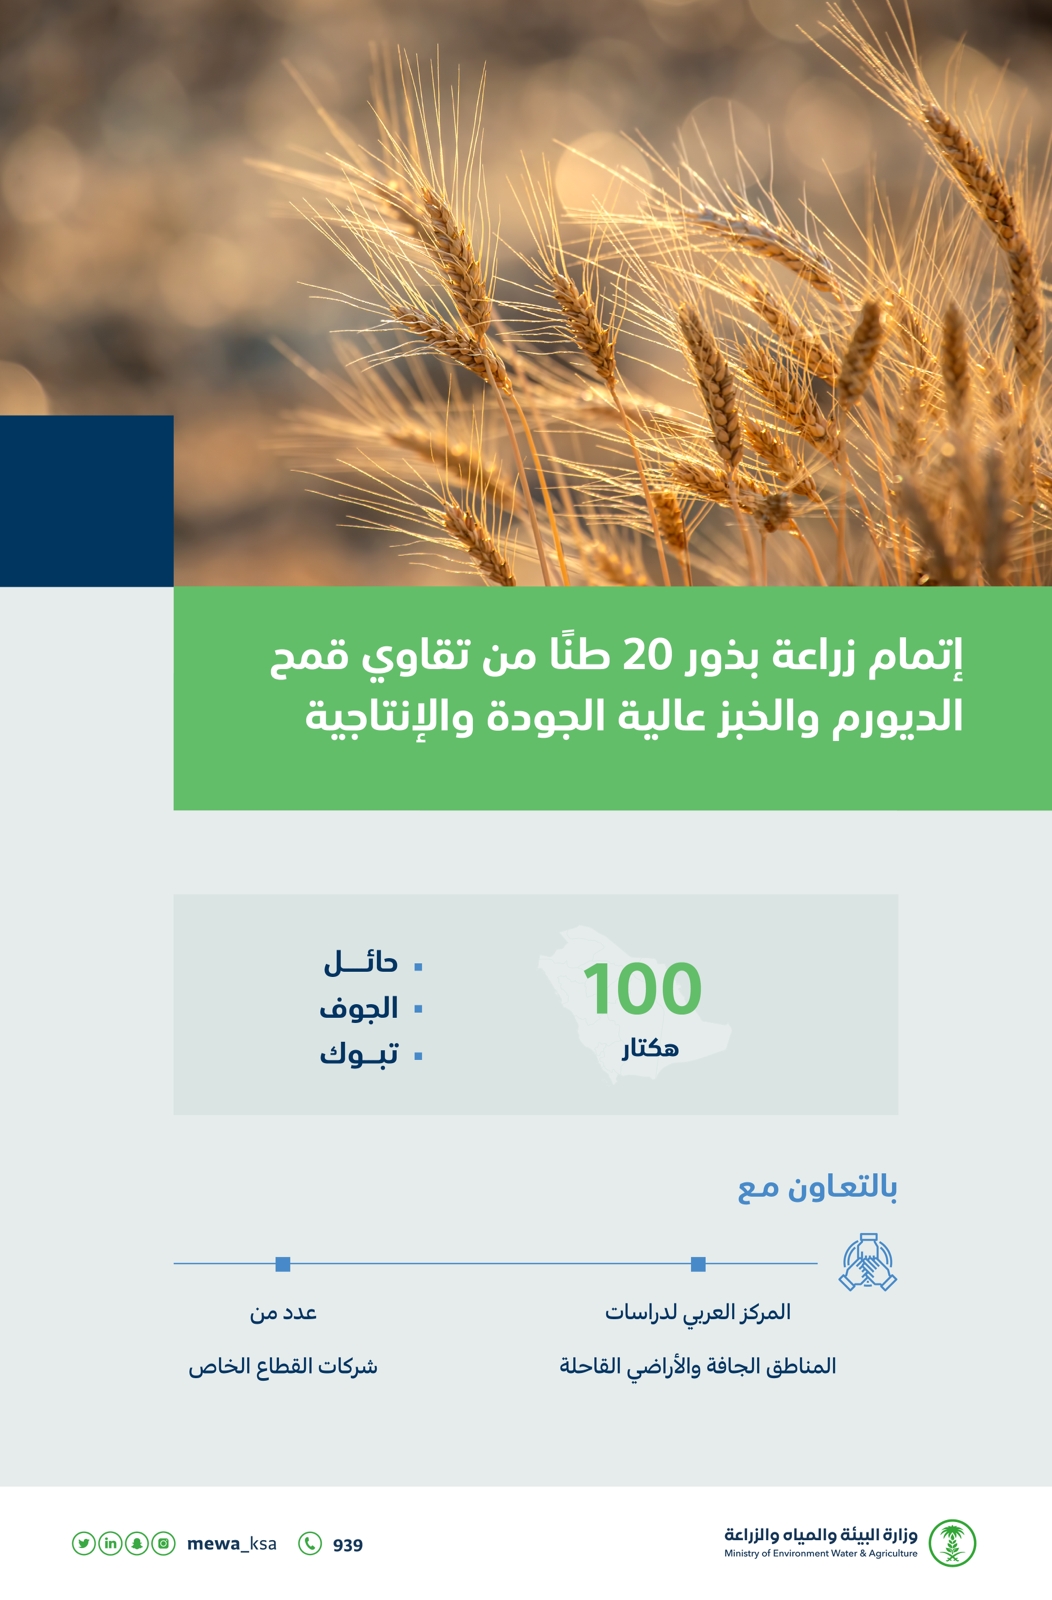 البيئة : إتمام زراعة بذور ٢٠ طنًا من تقاوى قمح الديورم والخبز 